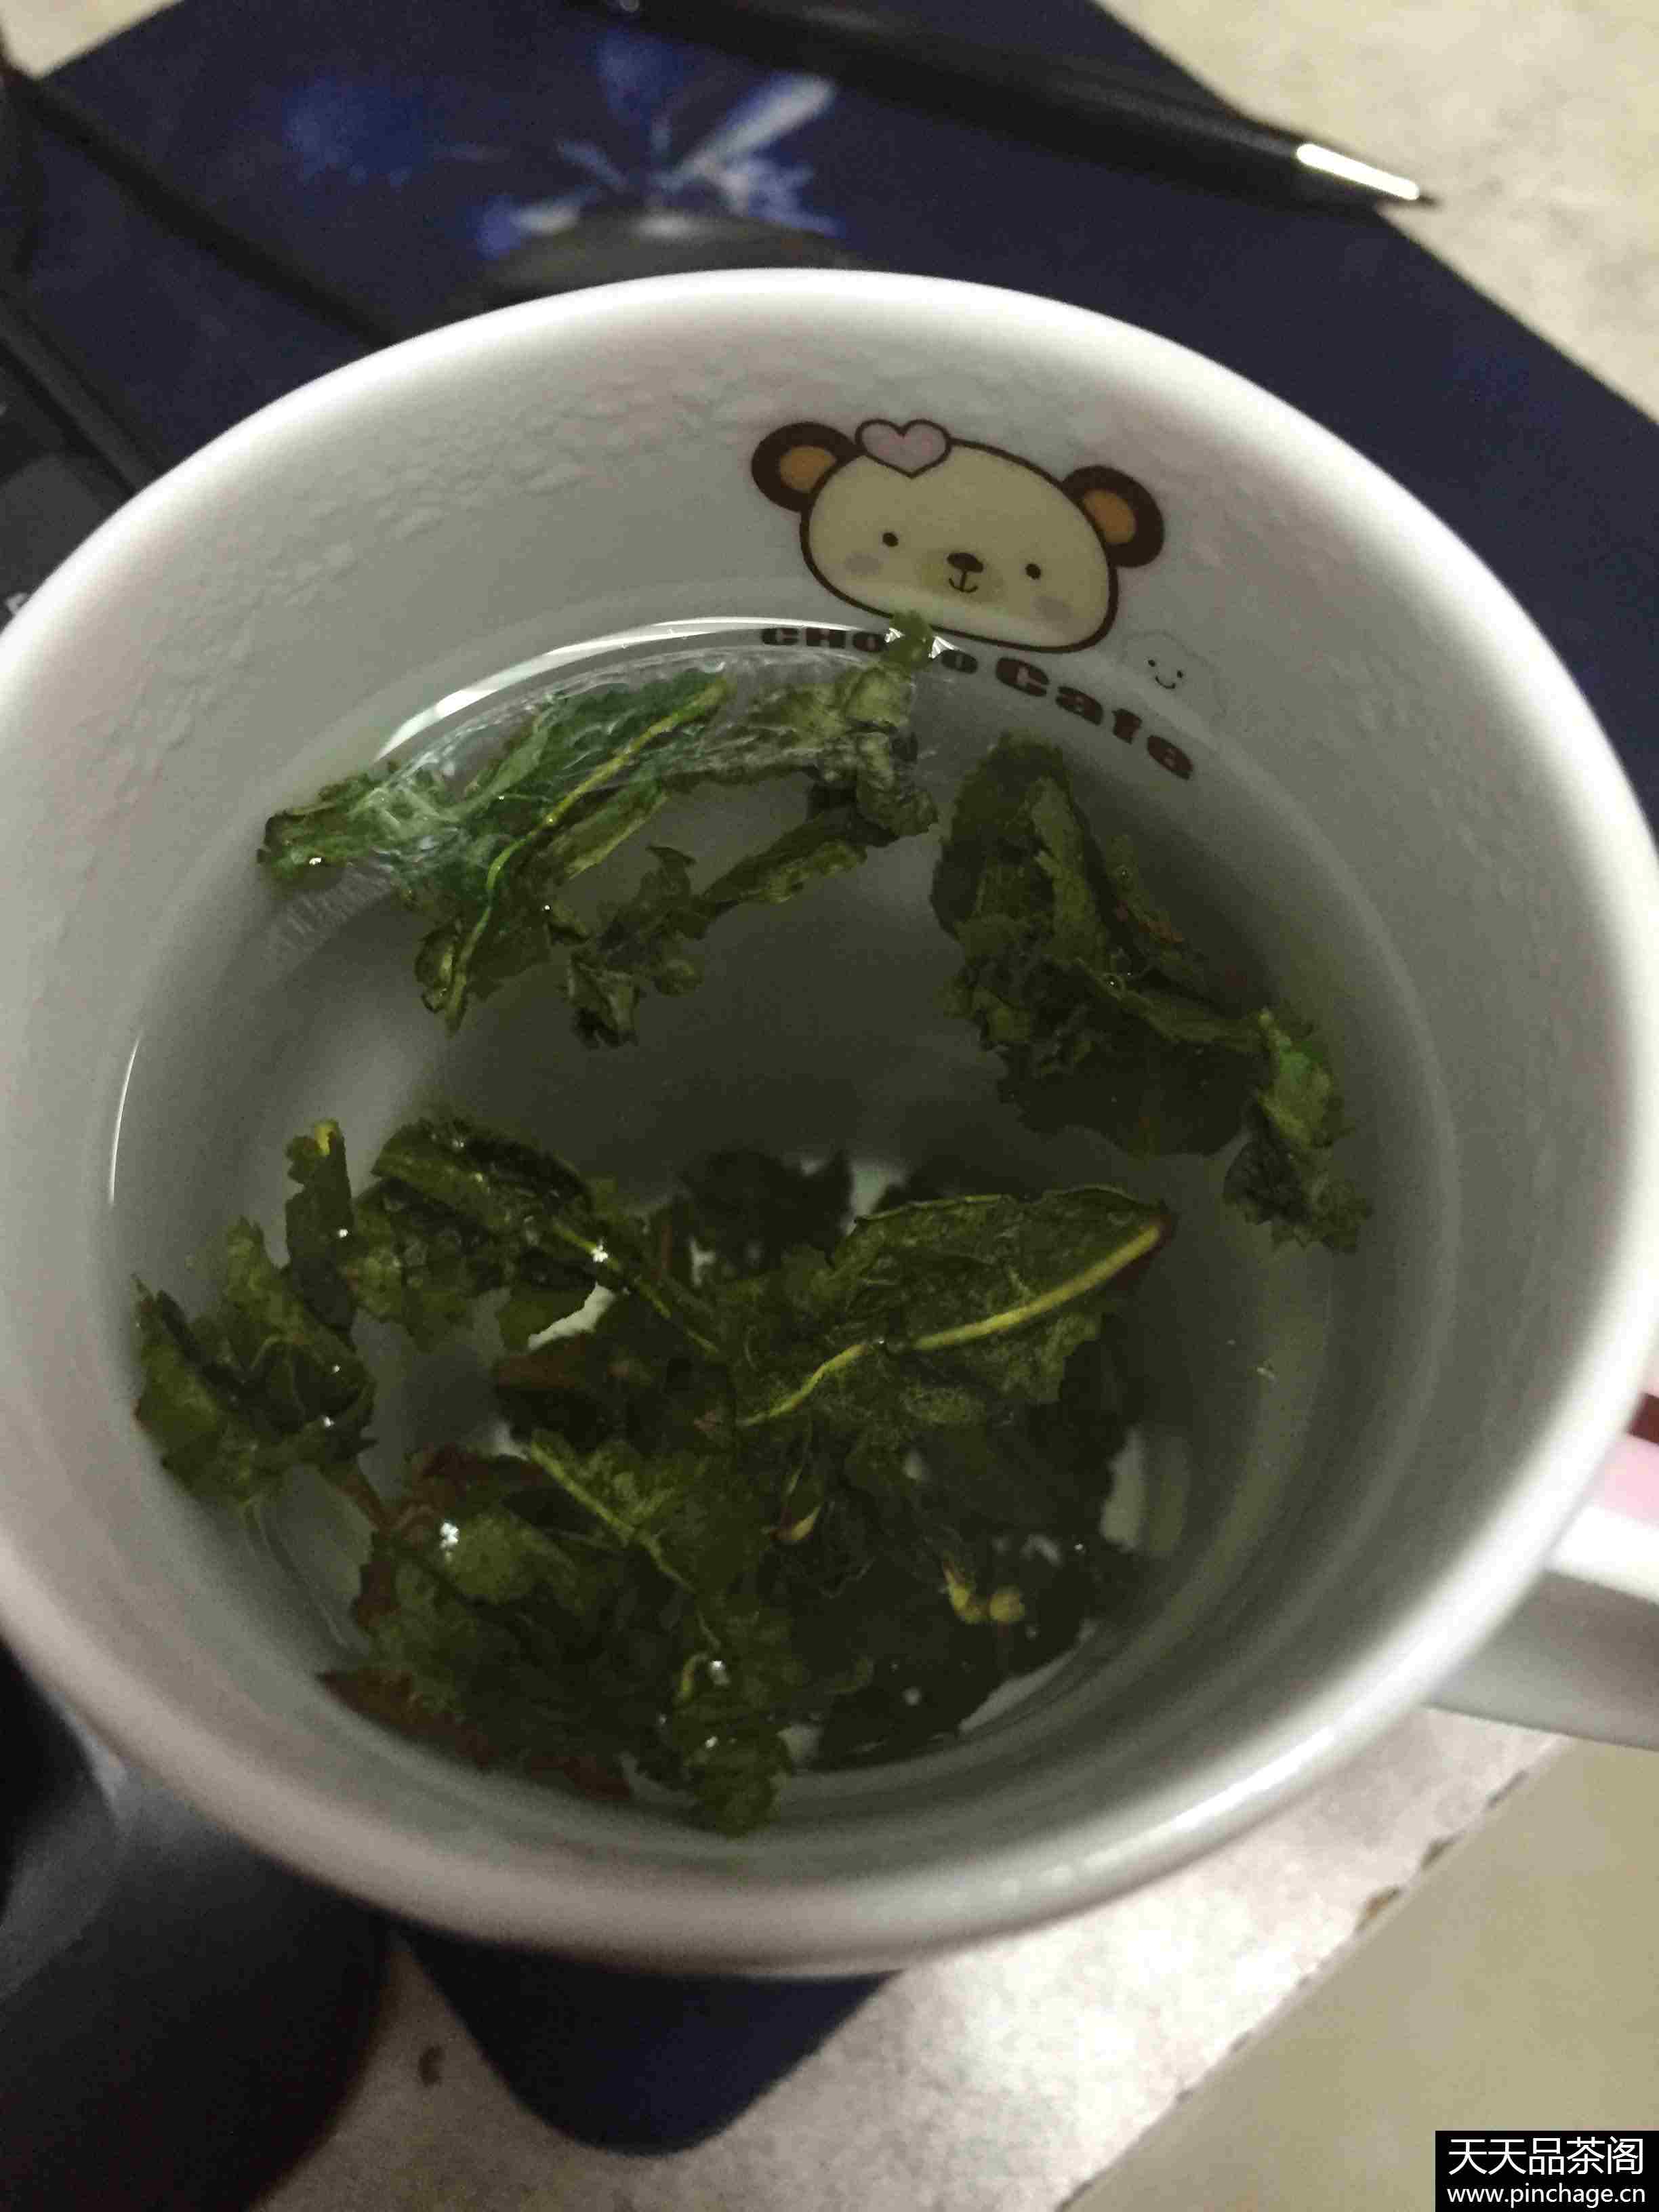 缤绿 新年礼茶 铁观音茶叶